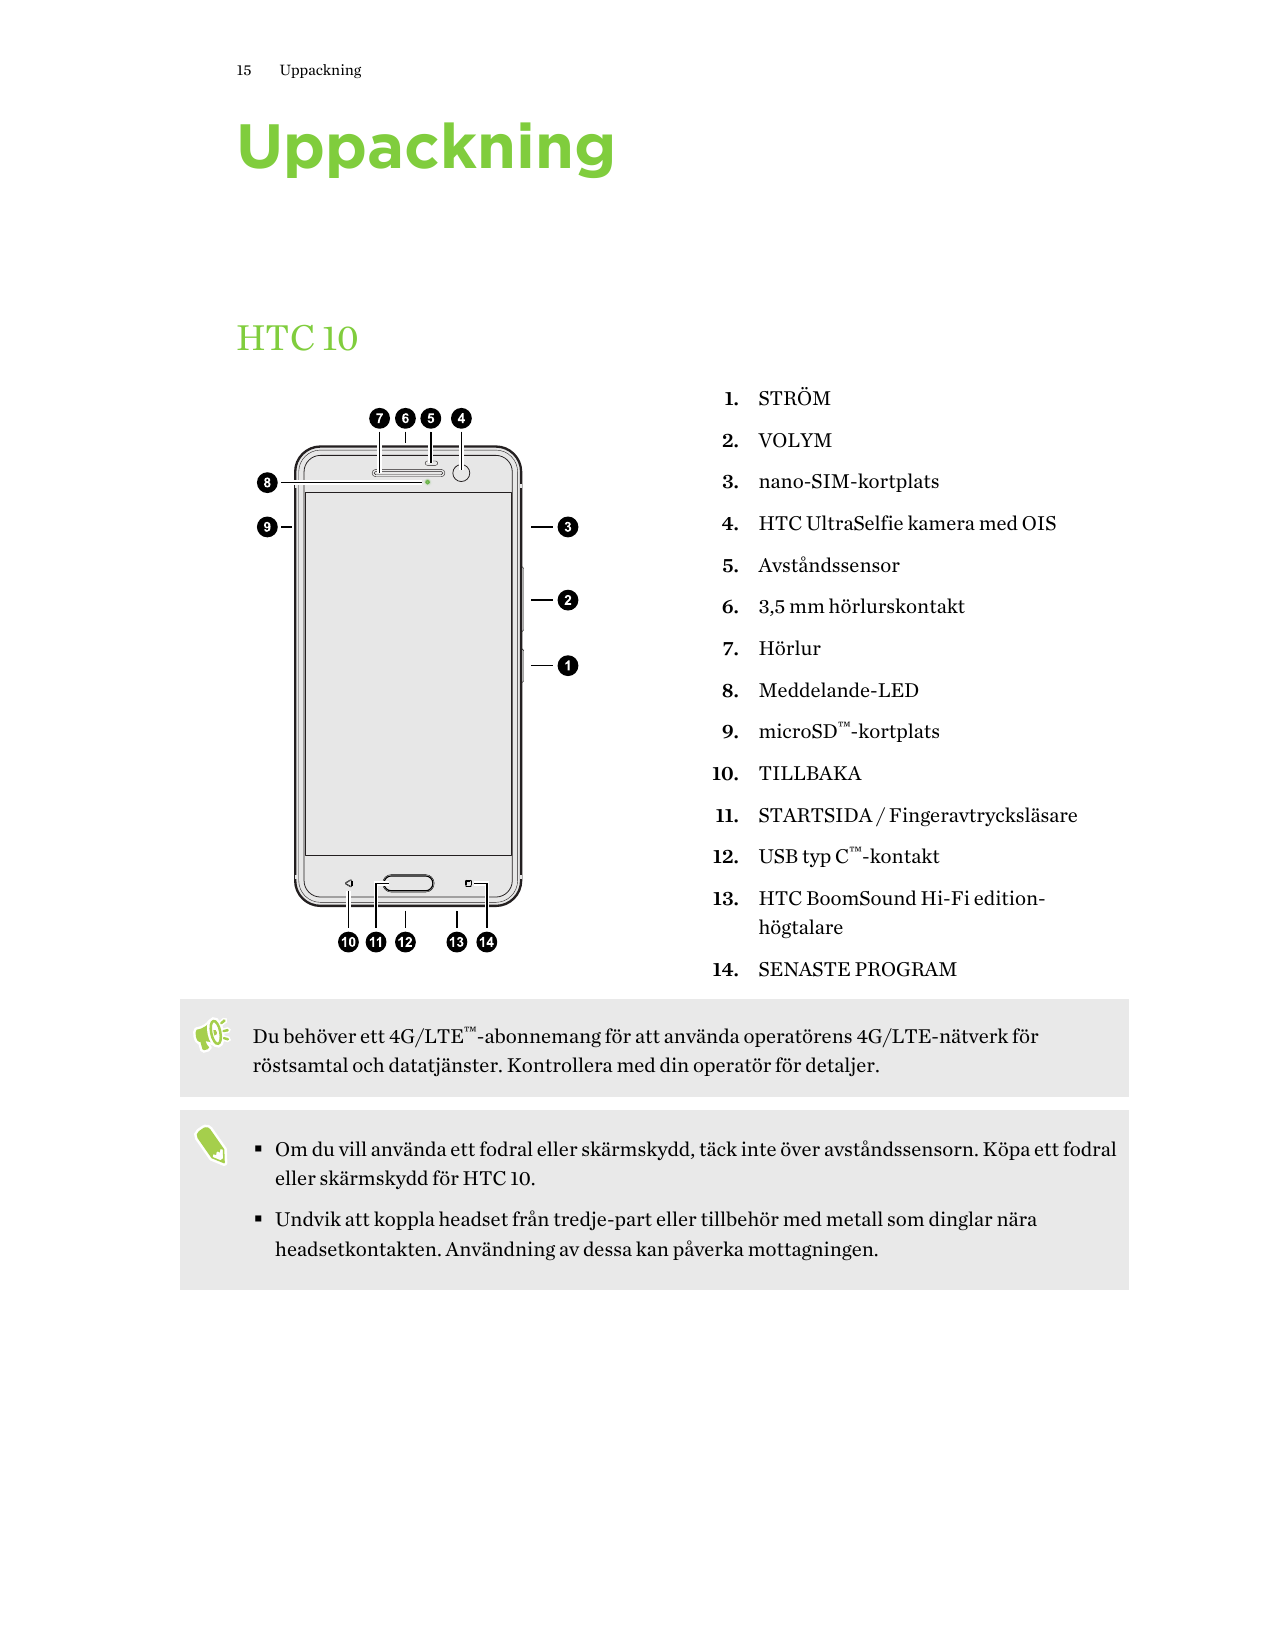 15UppackningUppackningHTC 101. STRÖM2. VOLYM3. nano-SIM-kortplats4. HTC UltraSelfie kamera med OIS5. Avståndssensor6. 3,5 mm hör